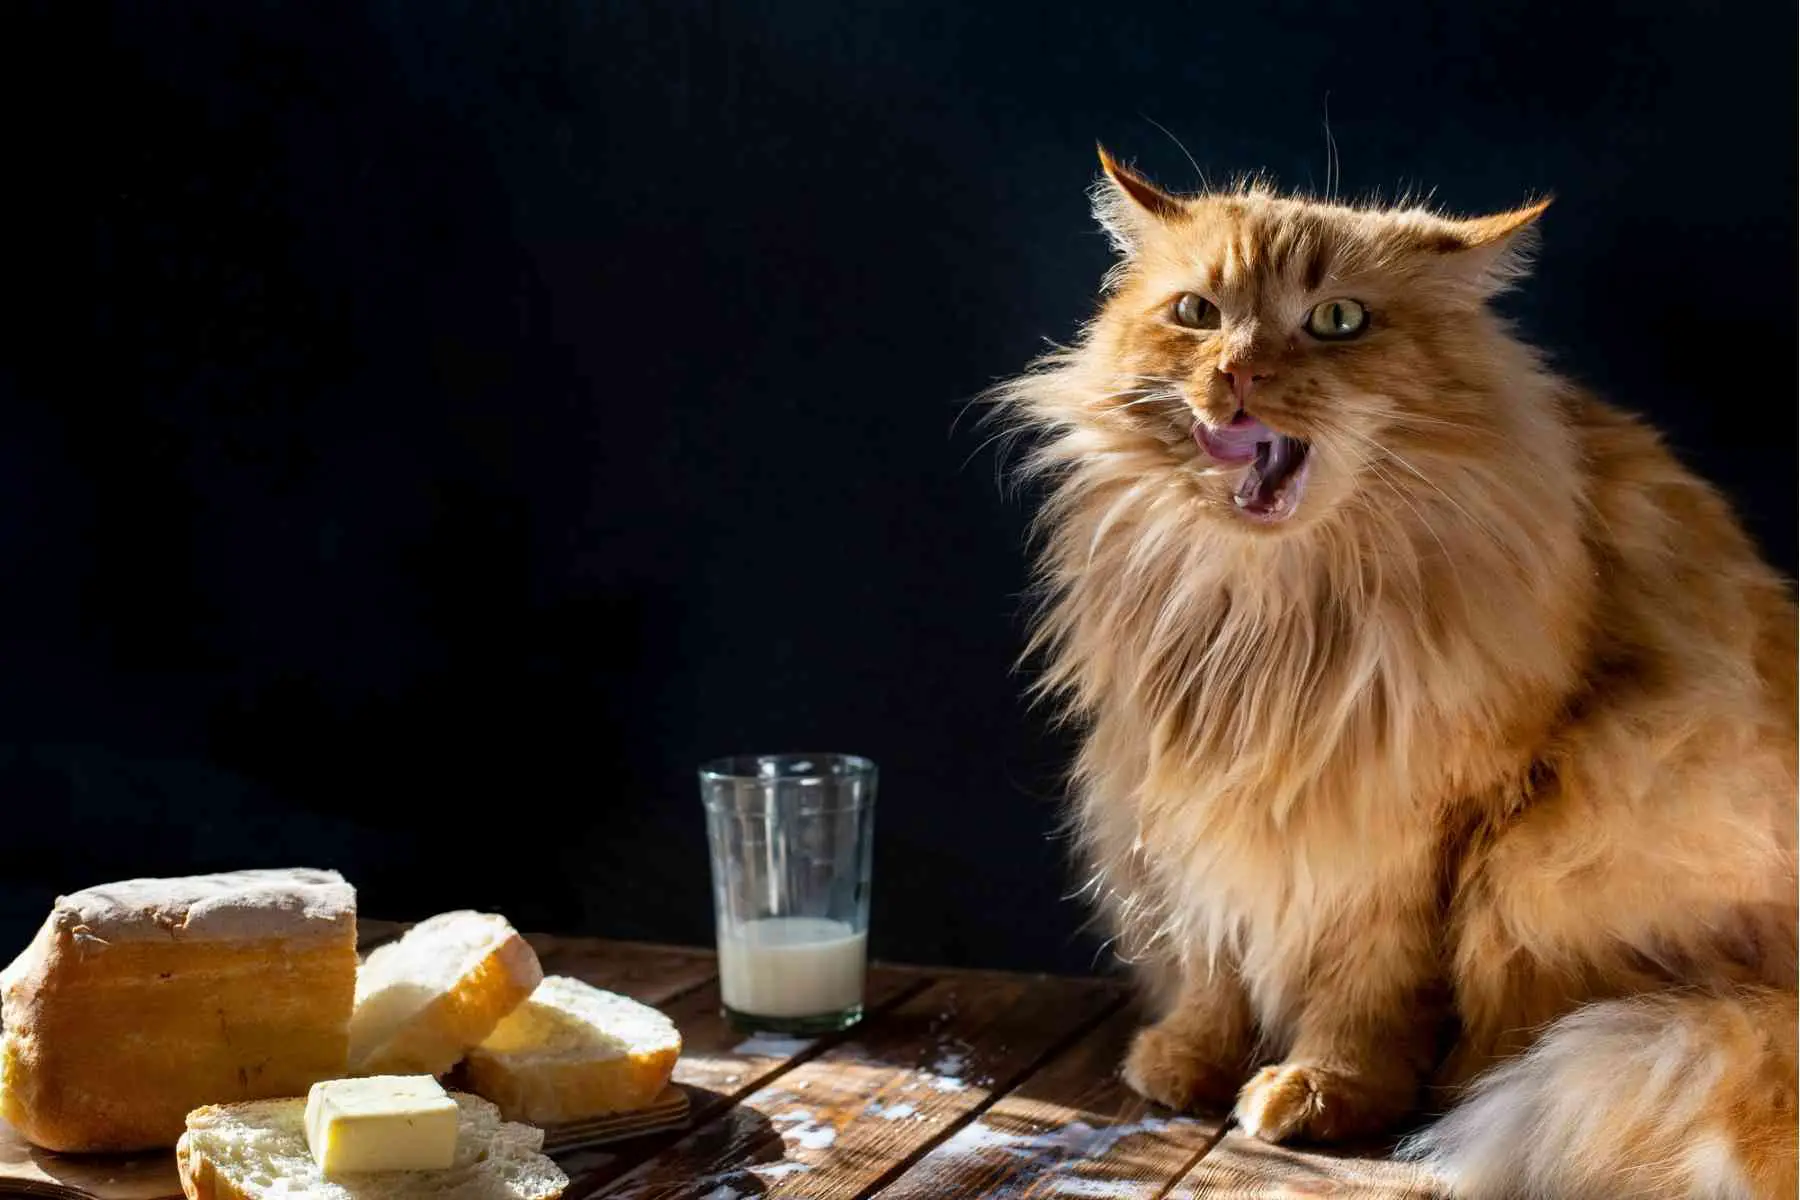 Katt slickar sig kring munnen med smör och mjölk framför sig